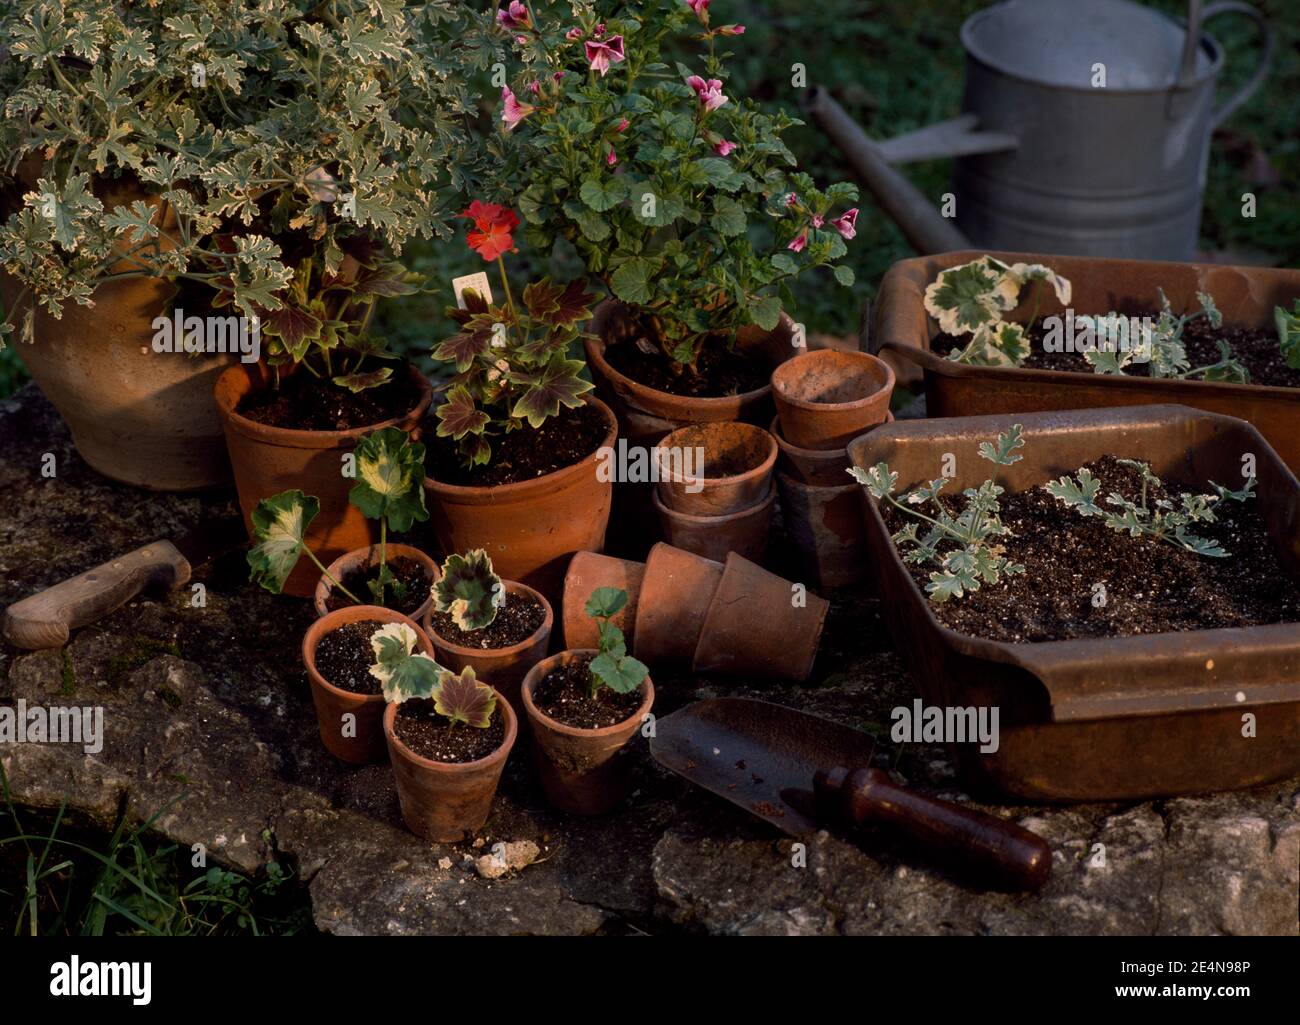 In estate, in giardino si trovano talee in vaso Foto Stock